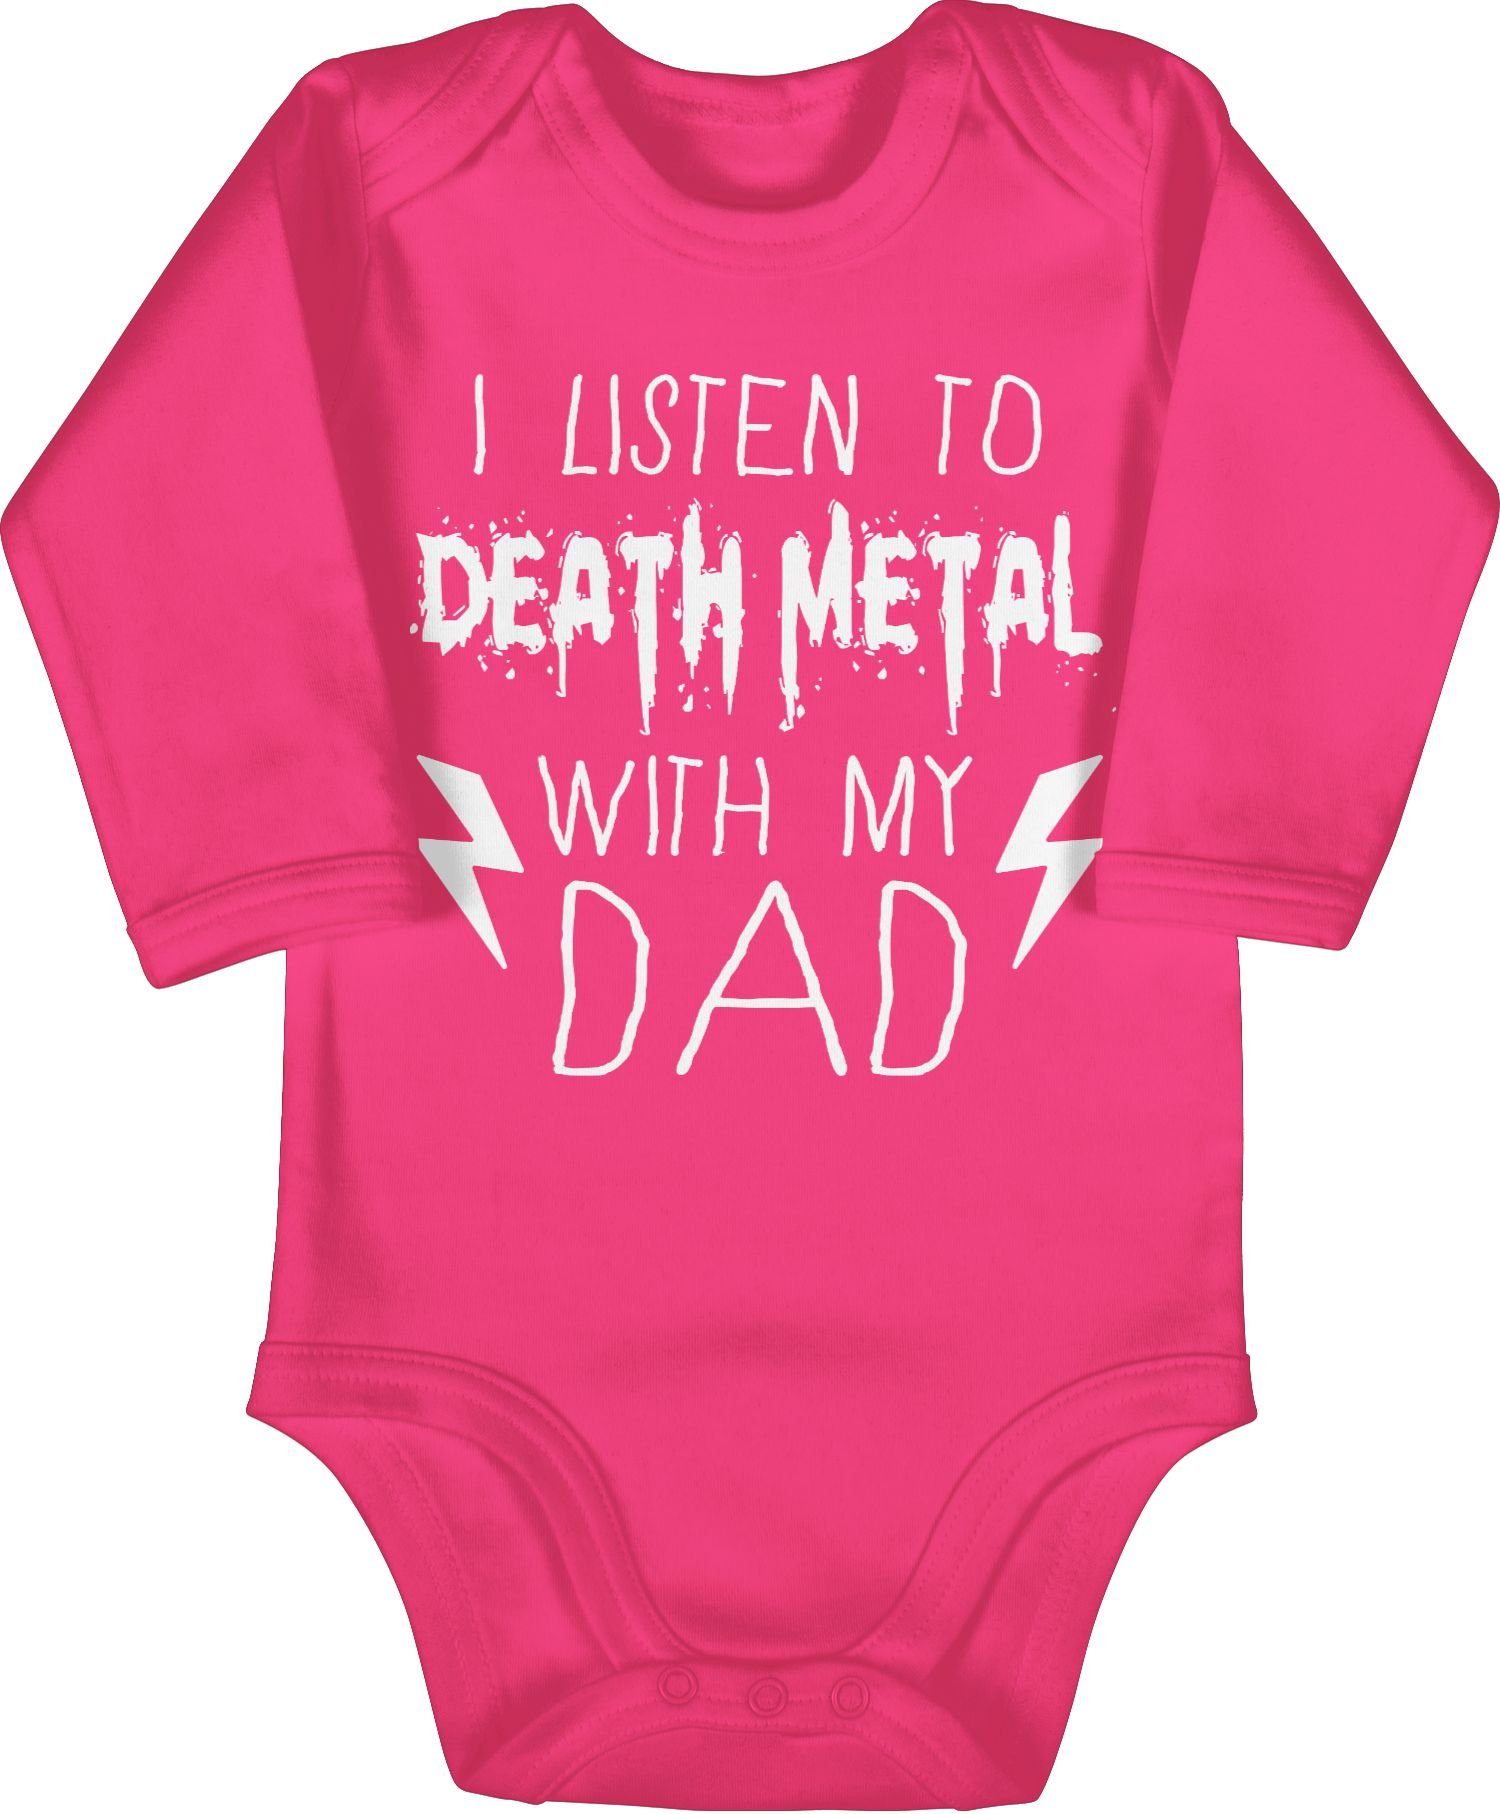 Shirtracer Shirtbody I listen to Death Metal with my dad weiß Sprüche Baby 2 Fuchsia | Shirtbodies